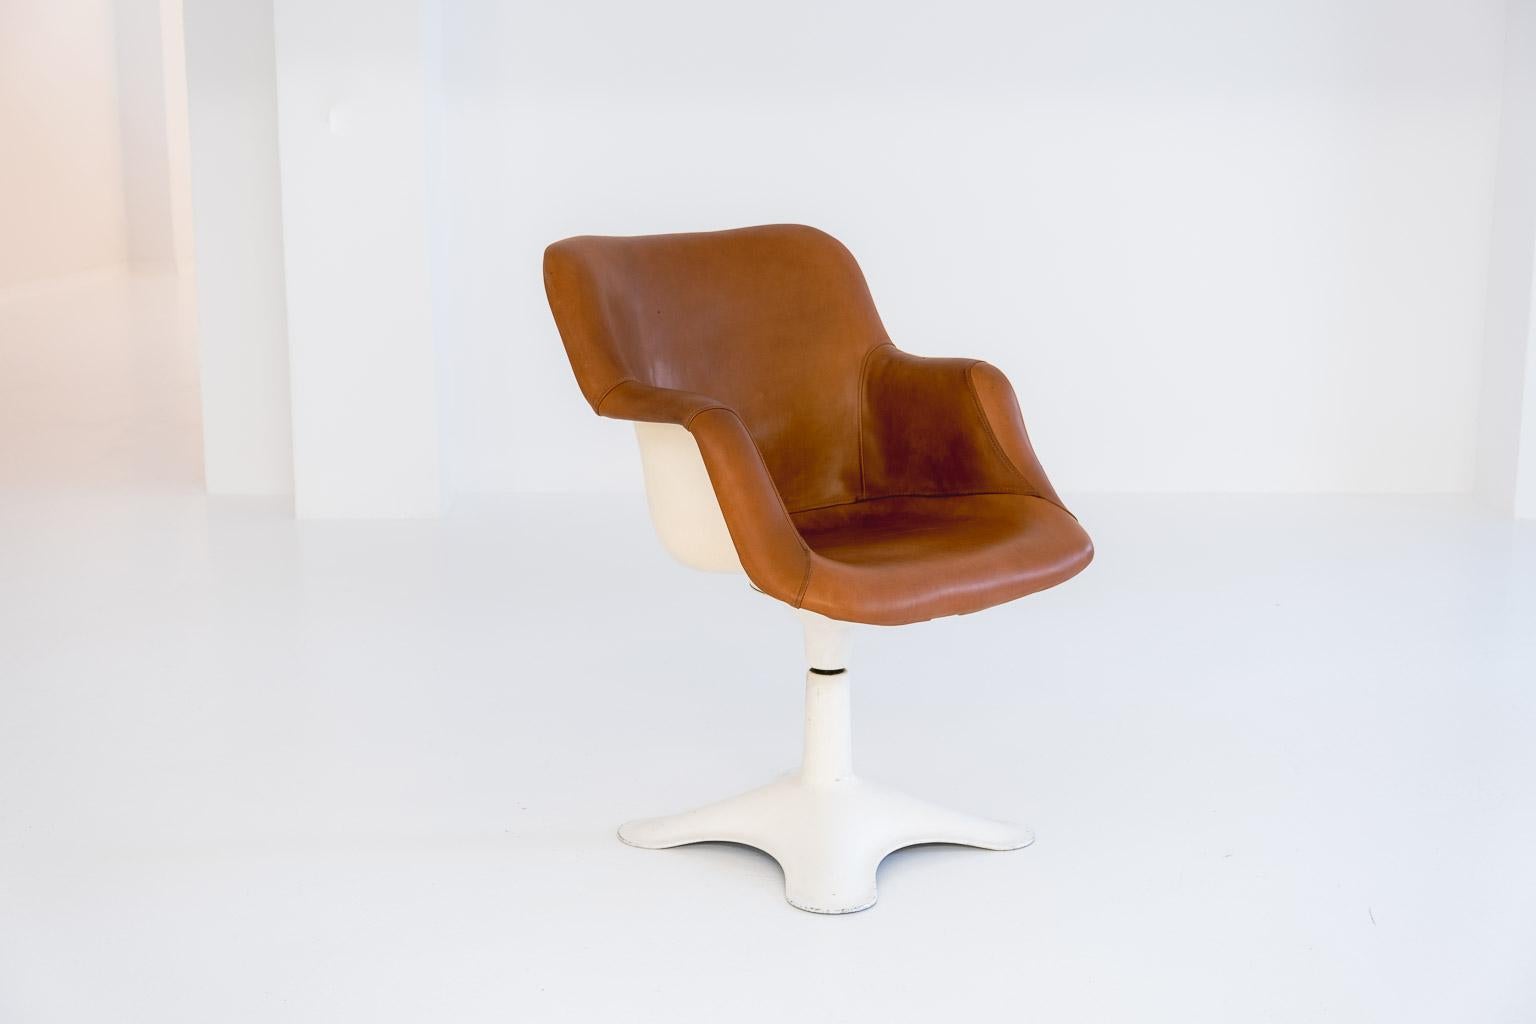 Depuis 1959, Yrjö Kukkapuro a travaillé dans son propre Studio, effectuant des recherches et développant notamment des sièges ergonomiques qui, d'une part, ont souvent un aspect très futuriste mais qui, d'autre part, se révèlent extrêmement